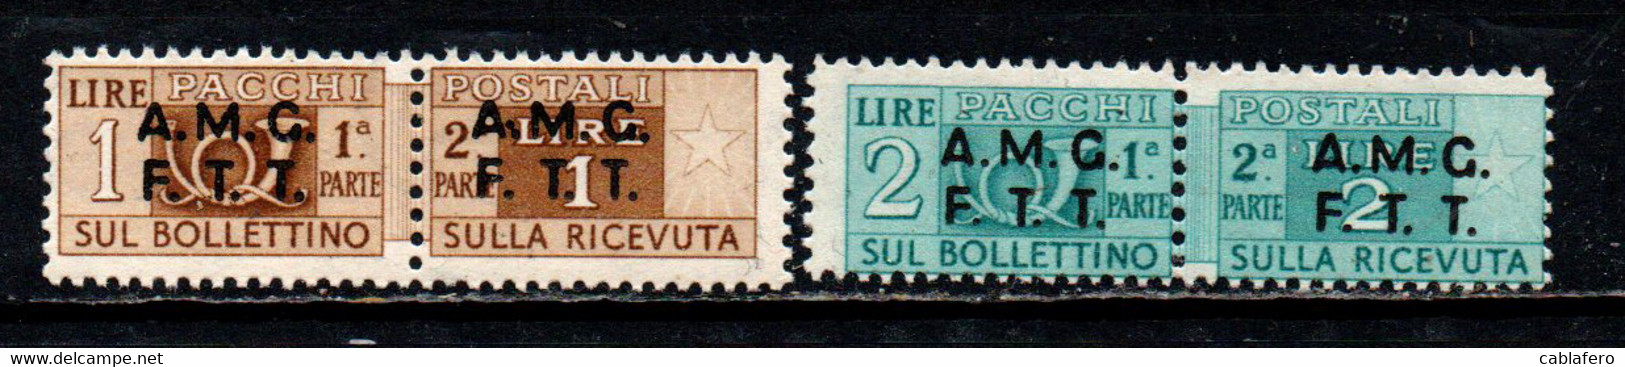 TRIESTE - AMGFTT - 1947 - PACCHI POSTALI - SOVRASTAMPA SU DUE LINEE - 1 E 2 LIRE - MNH - Colis Postaux/concession